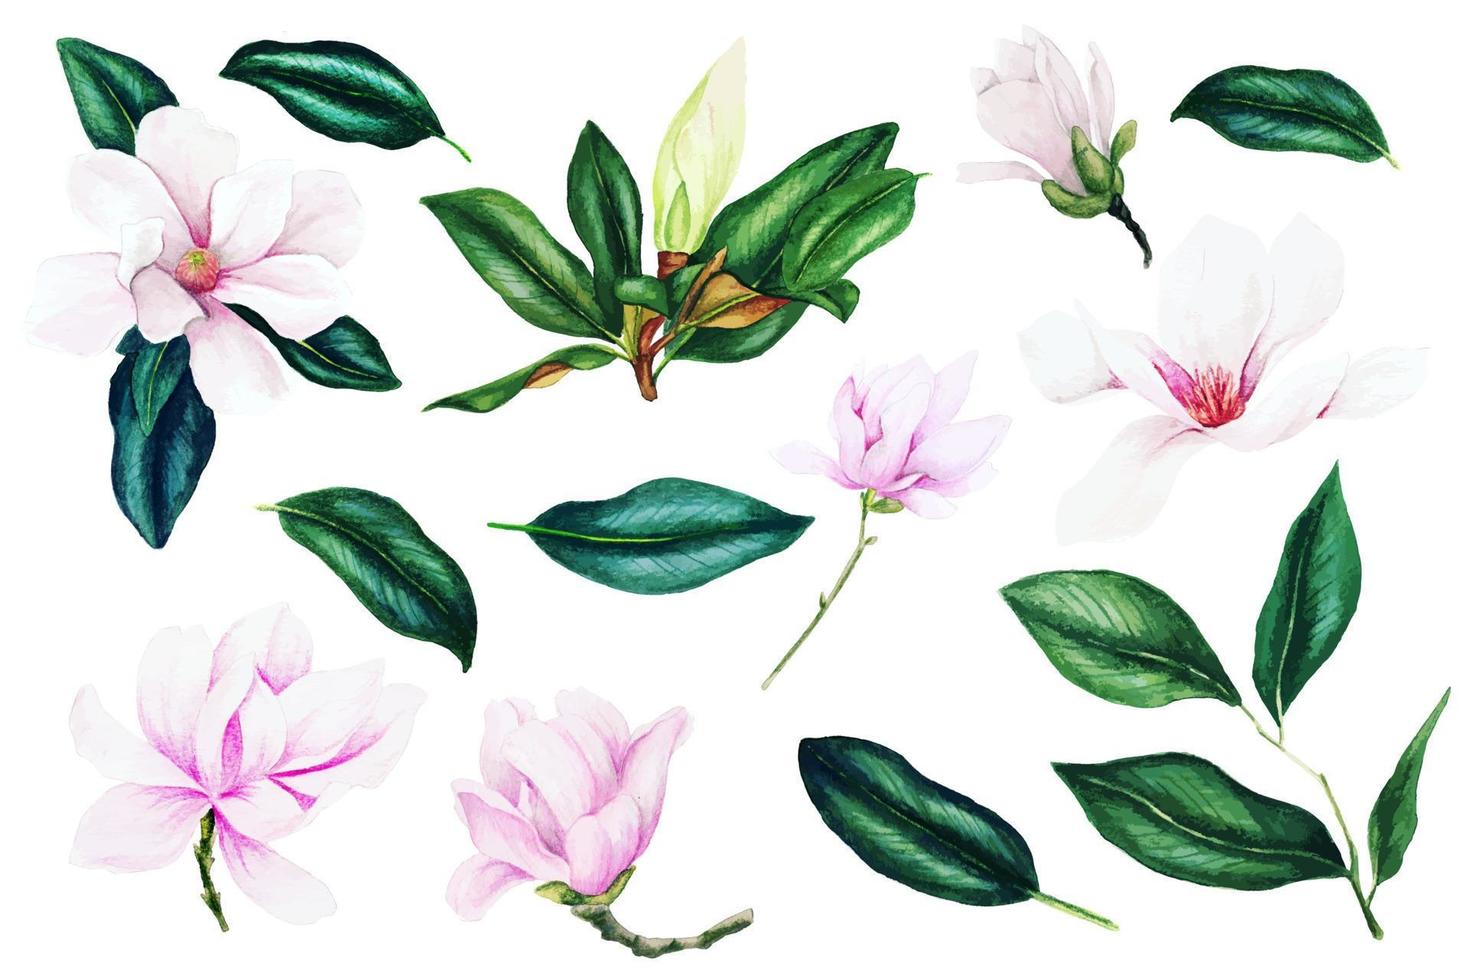 fiori e foglie di magnolia rosa chiaro, collezione di acquerelli, illustrazioni vettoriali disegnate a mano, elementi di design.